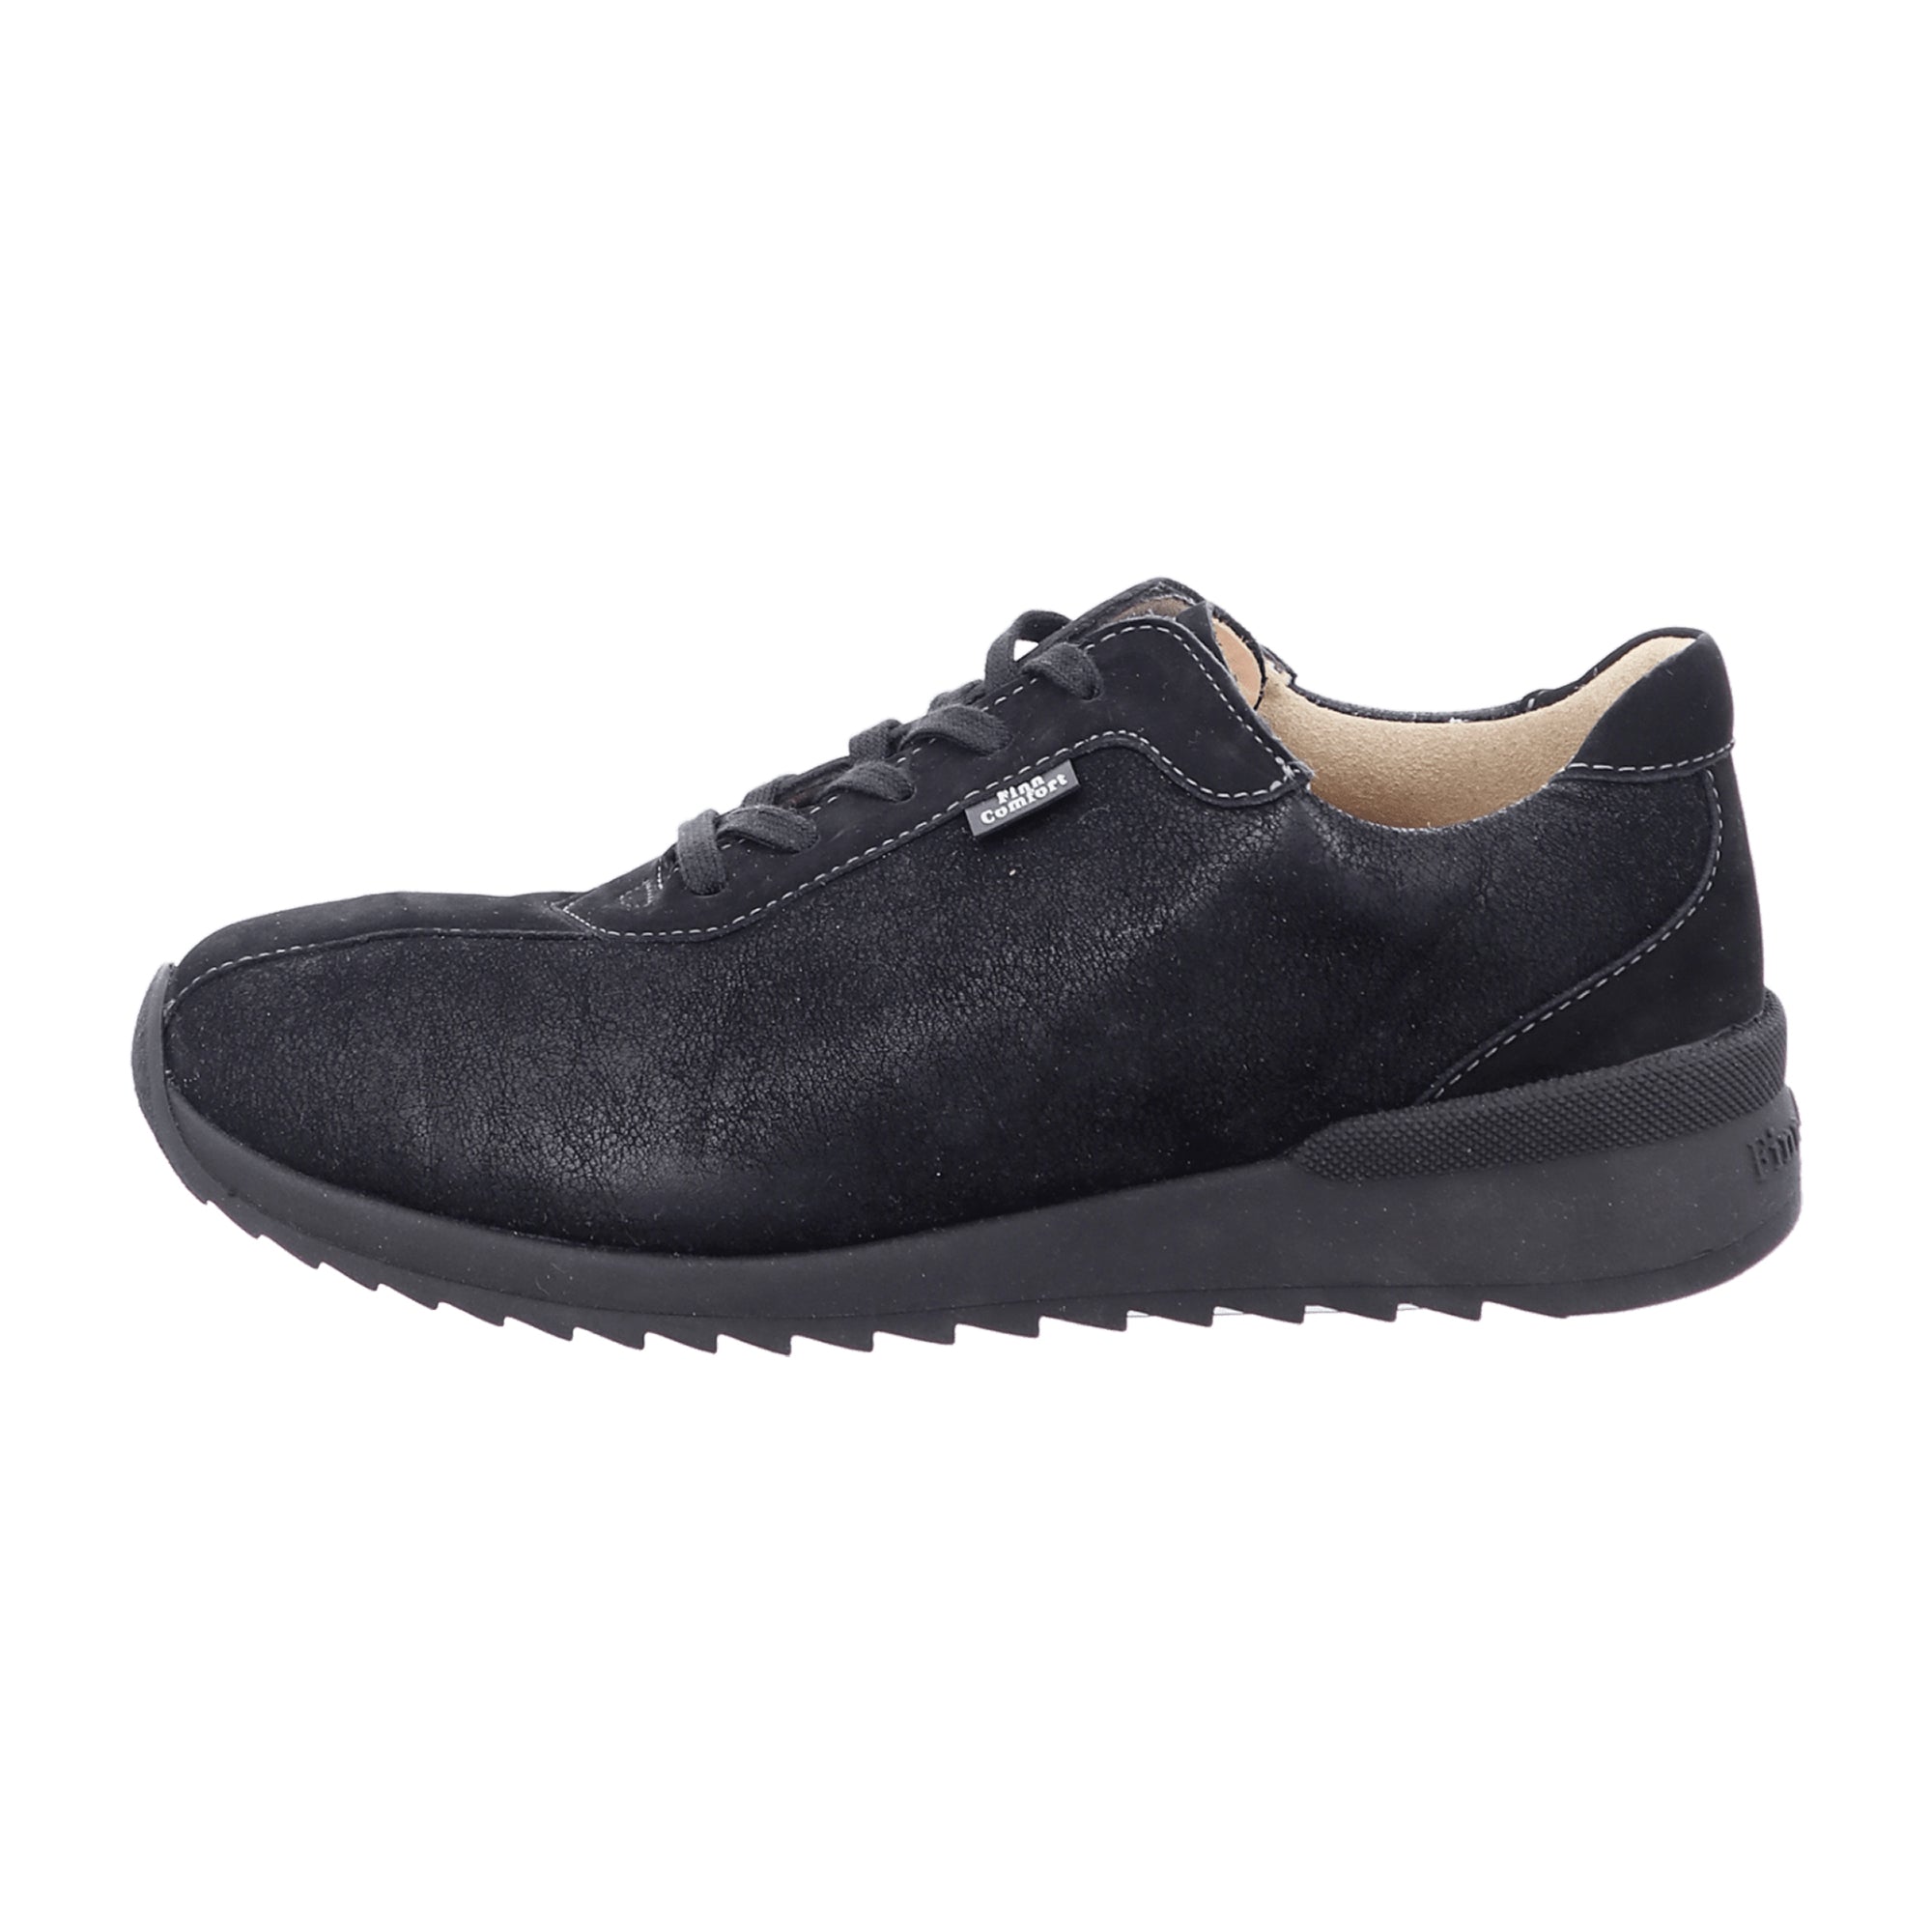 Finn Comfort Melk Women's Comfort Shoes - Elegant Black Leather